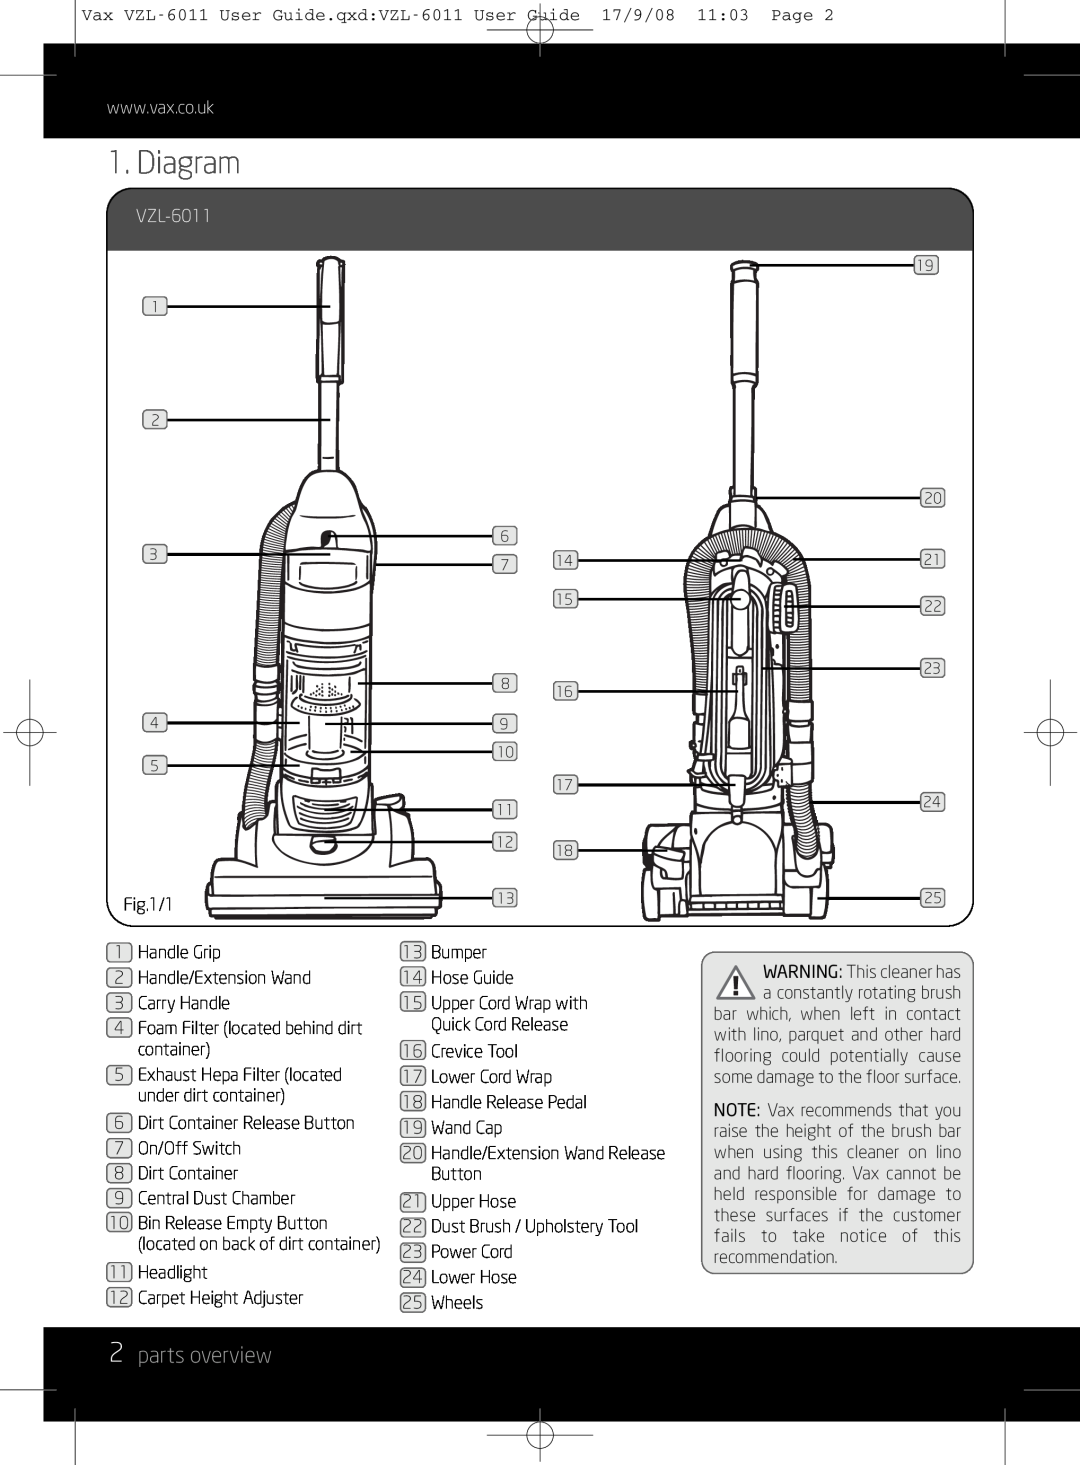 Vizio VZL-6011 instruction manual Diagram, 2parts overview 